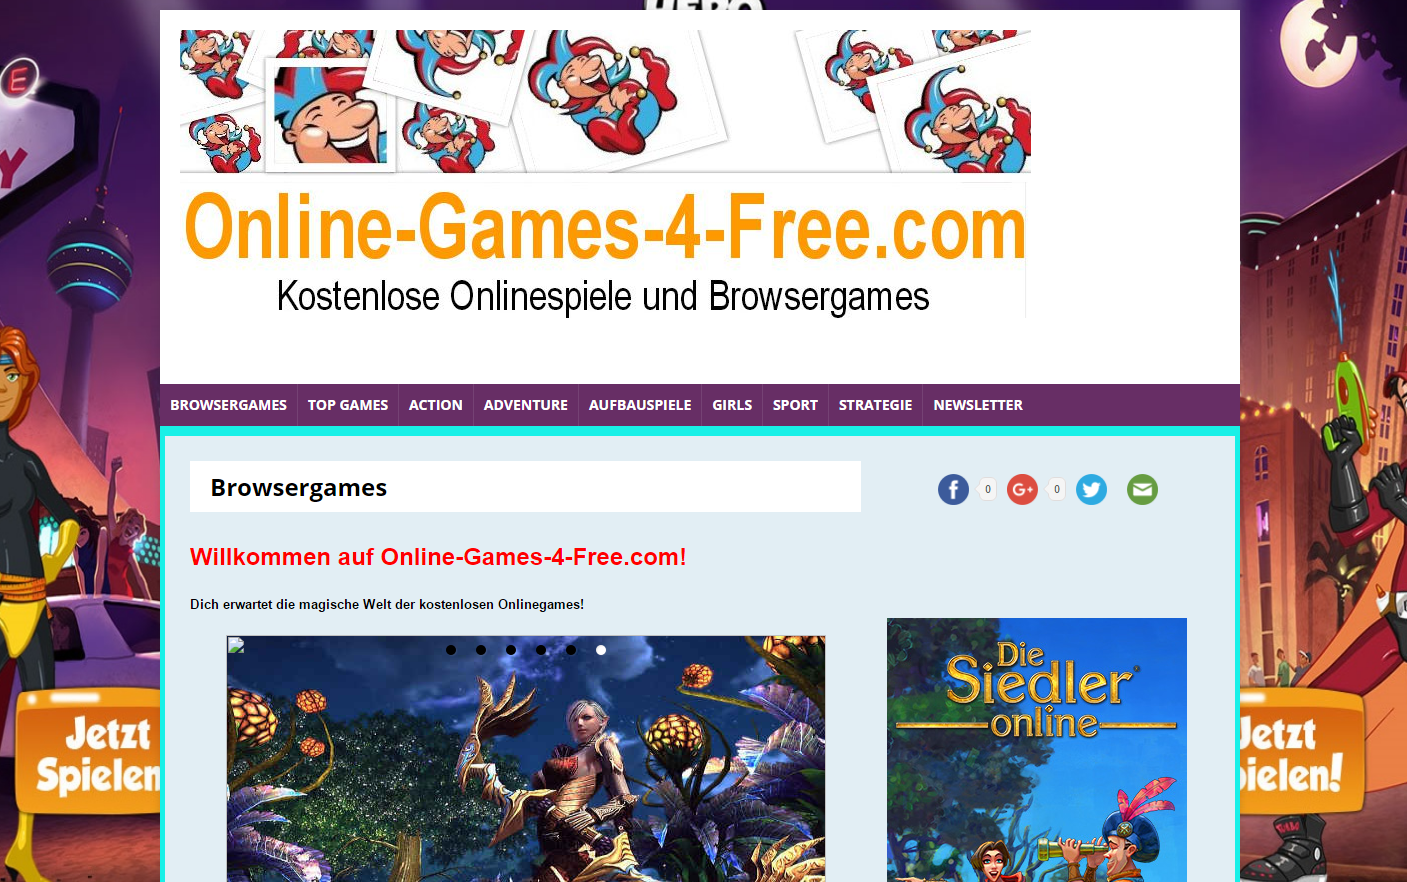 Details : Kostenlose Onlinespiele auf online-games-4-free.com